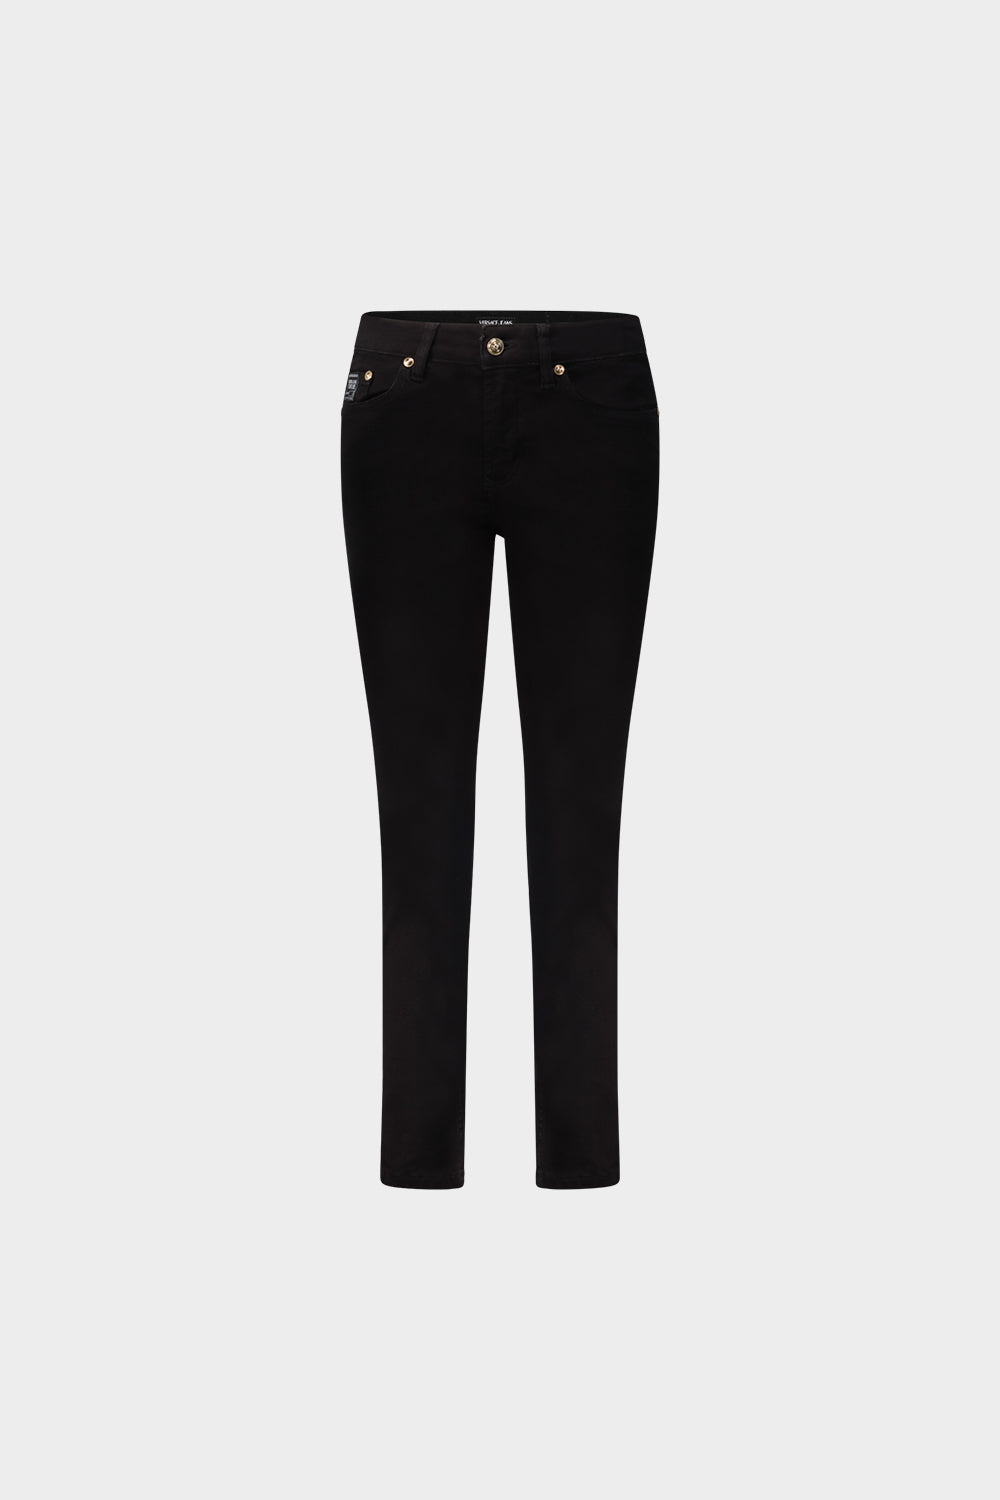 מכנסי ג'ינס לגברים רקמת שמש VERSACE Vendome online | ונדום .